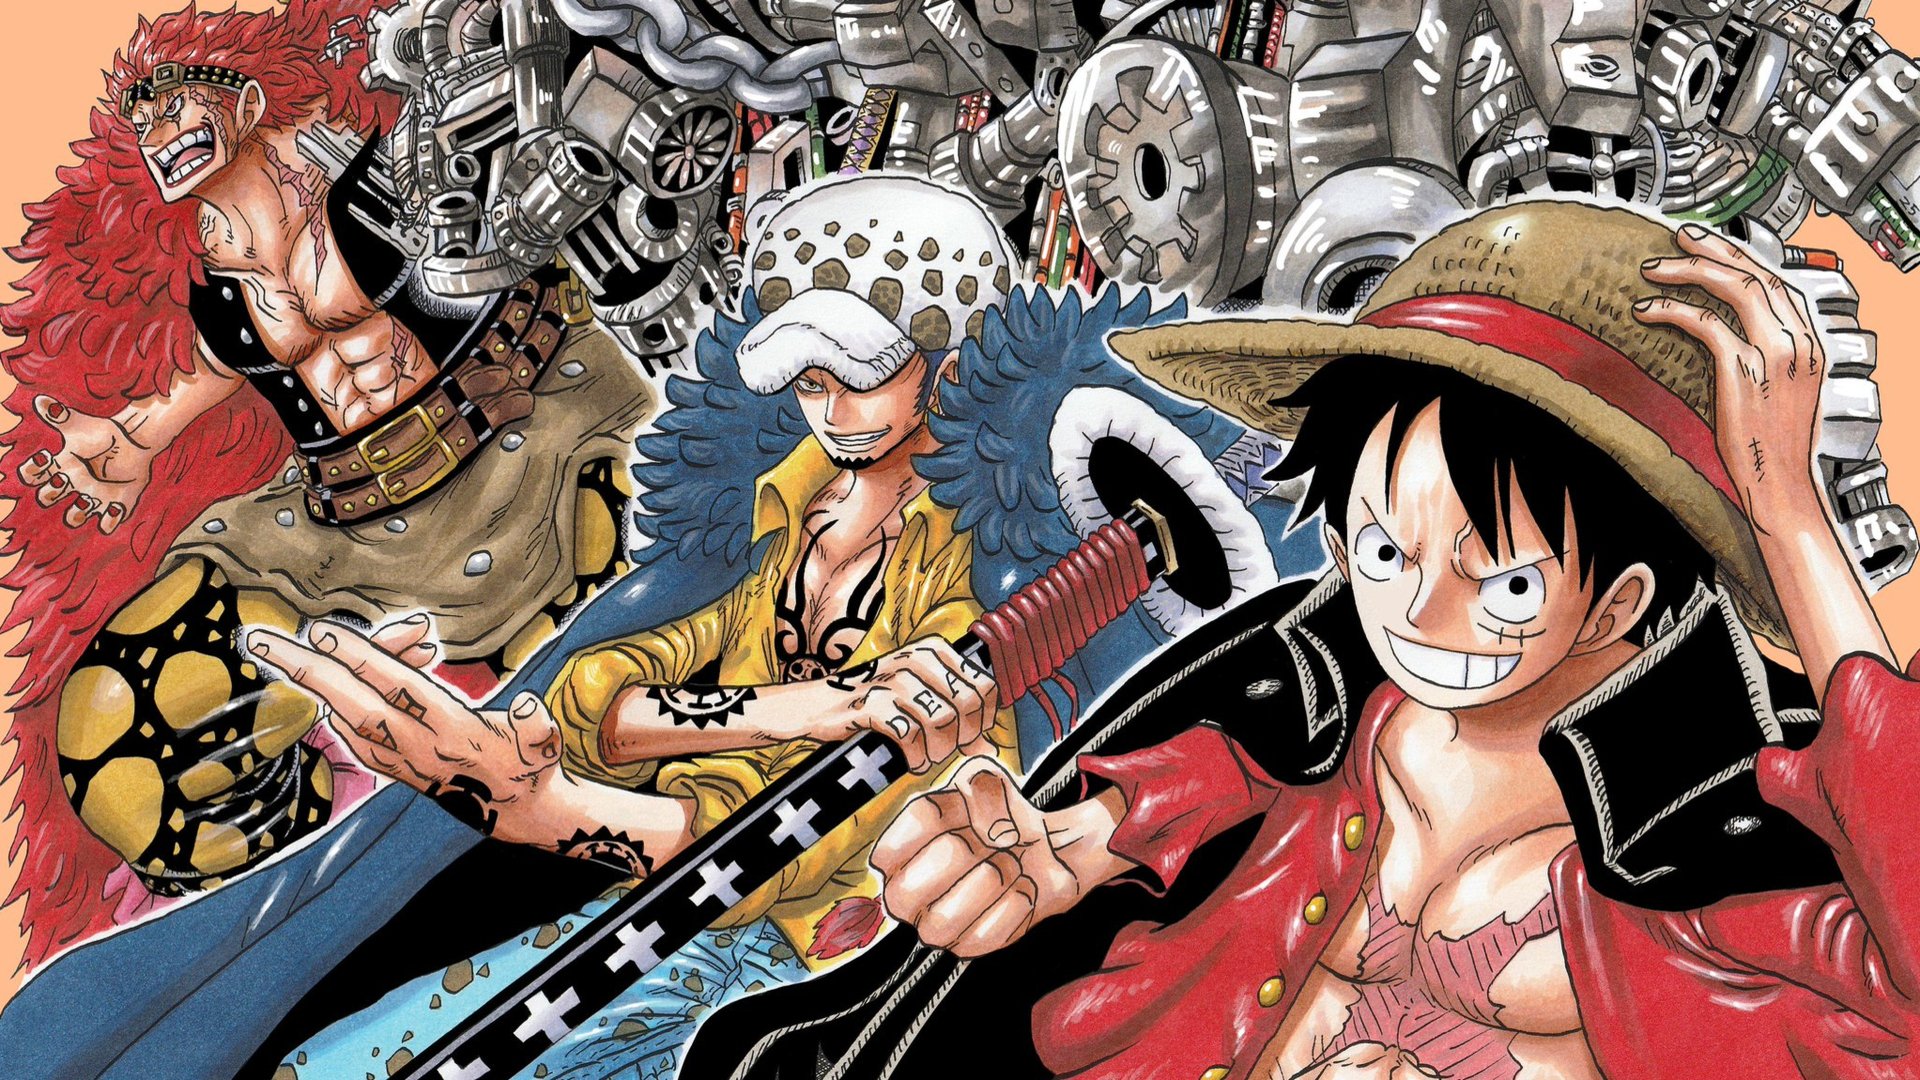 Cặp đôi trong One Piece có thể là không dành cho nhau nhưng chúng đã cùng nhau trải qua những khoảnh khắc đầy kịch tính, hài hước, cảm động. Hãy cùng xem những tràng cười và nước mắt của các cặp đôi như Zoro và Sanji, Luffy và Hancock, hay thậm chí là Usopp và Kaya.